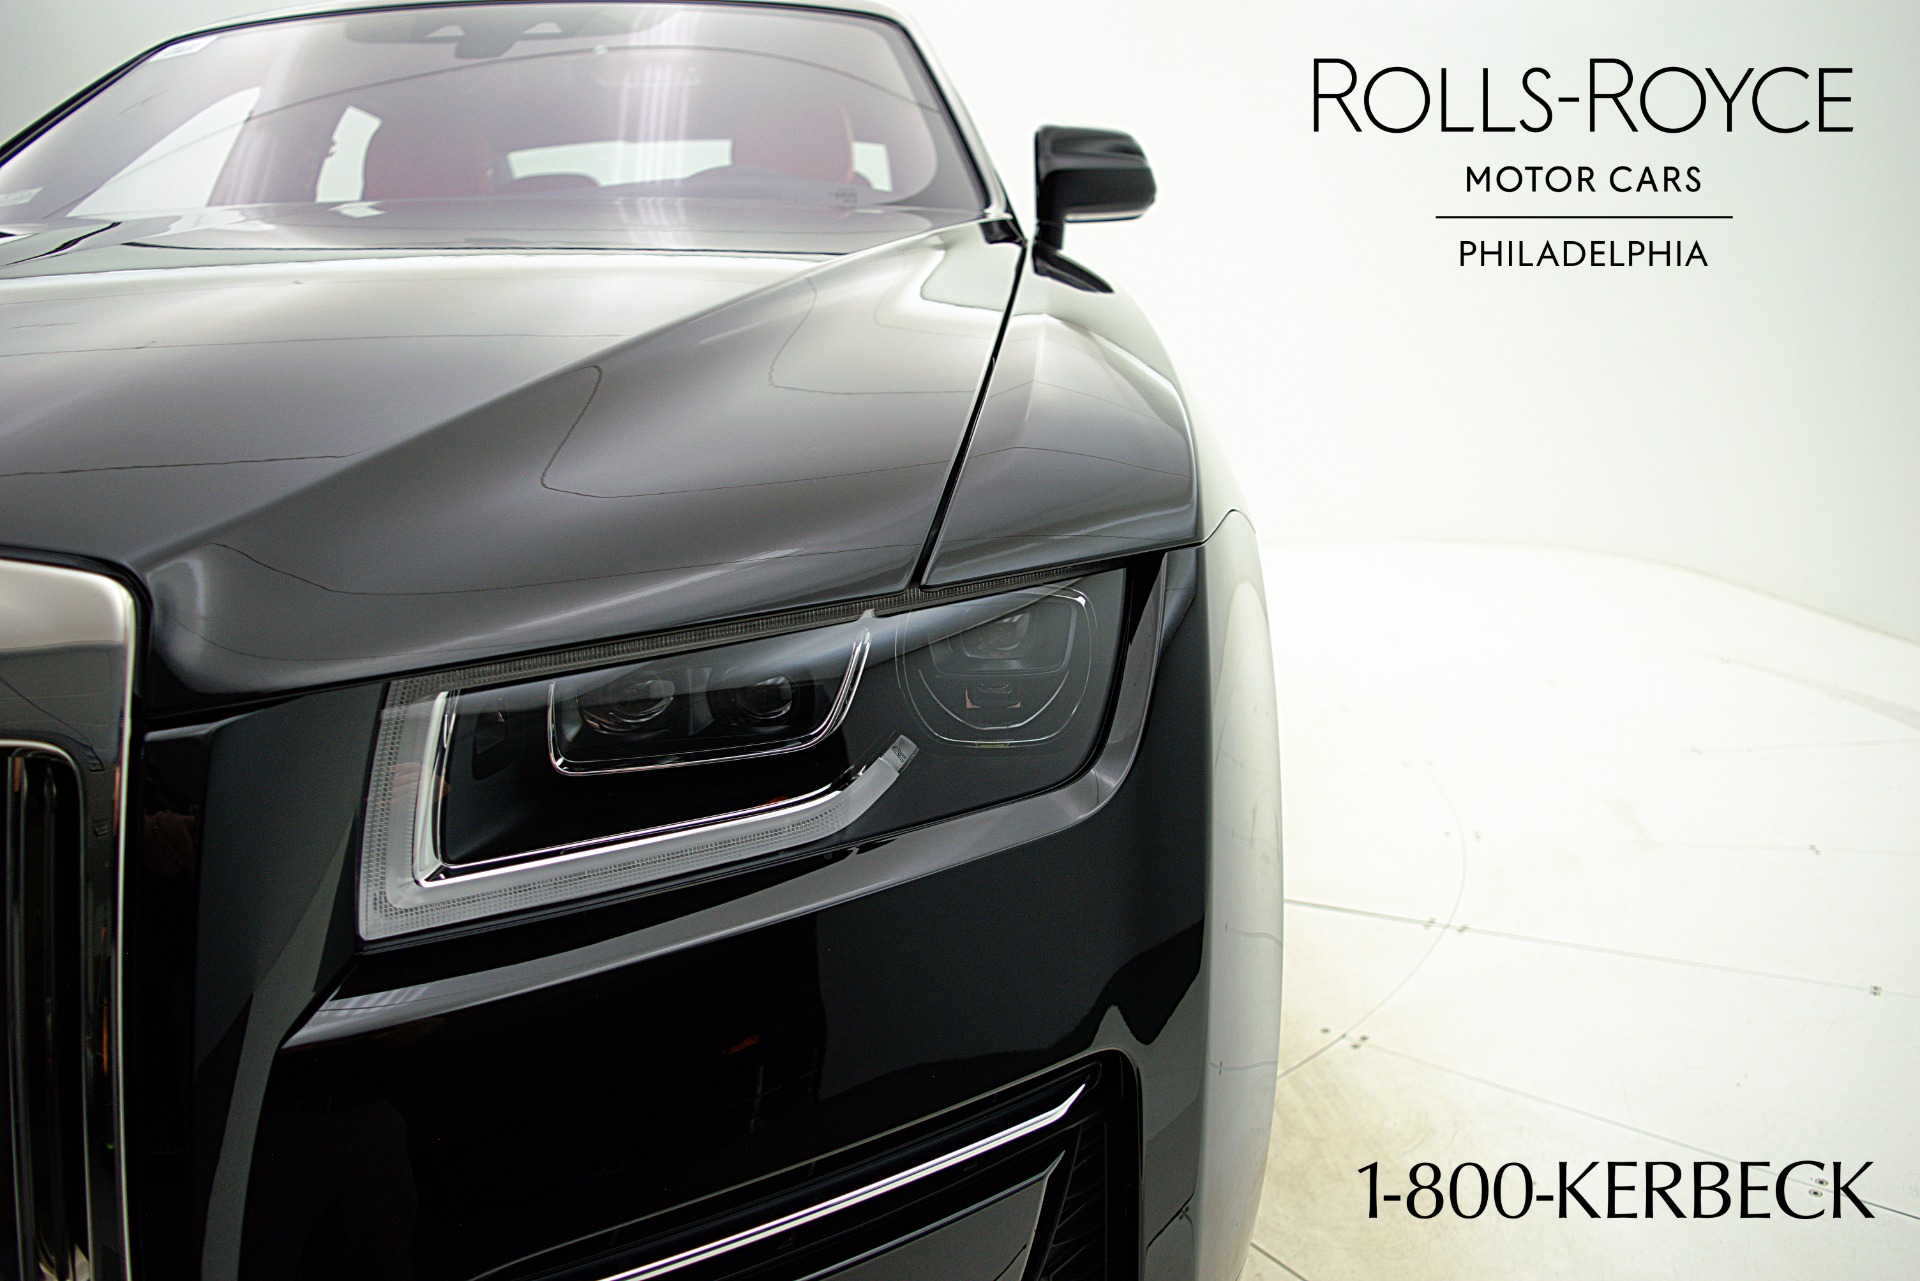 New 2023 Rolls-Royce Ghost 4D Sedan for Sale #PU218382